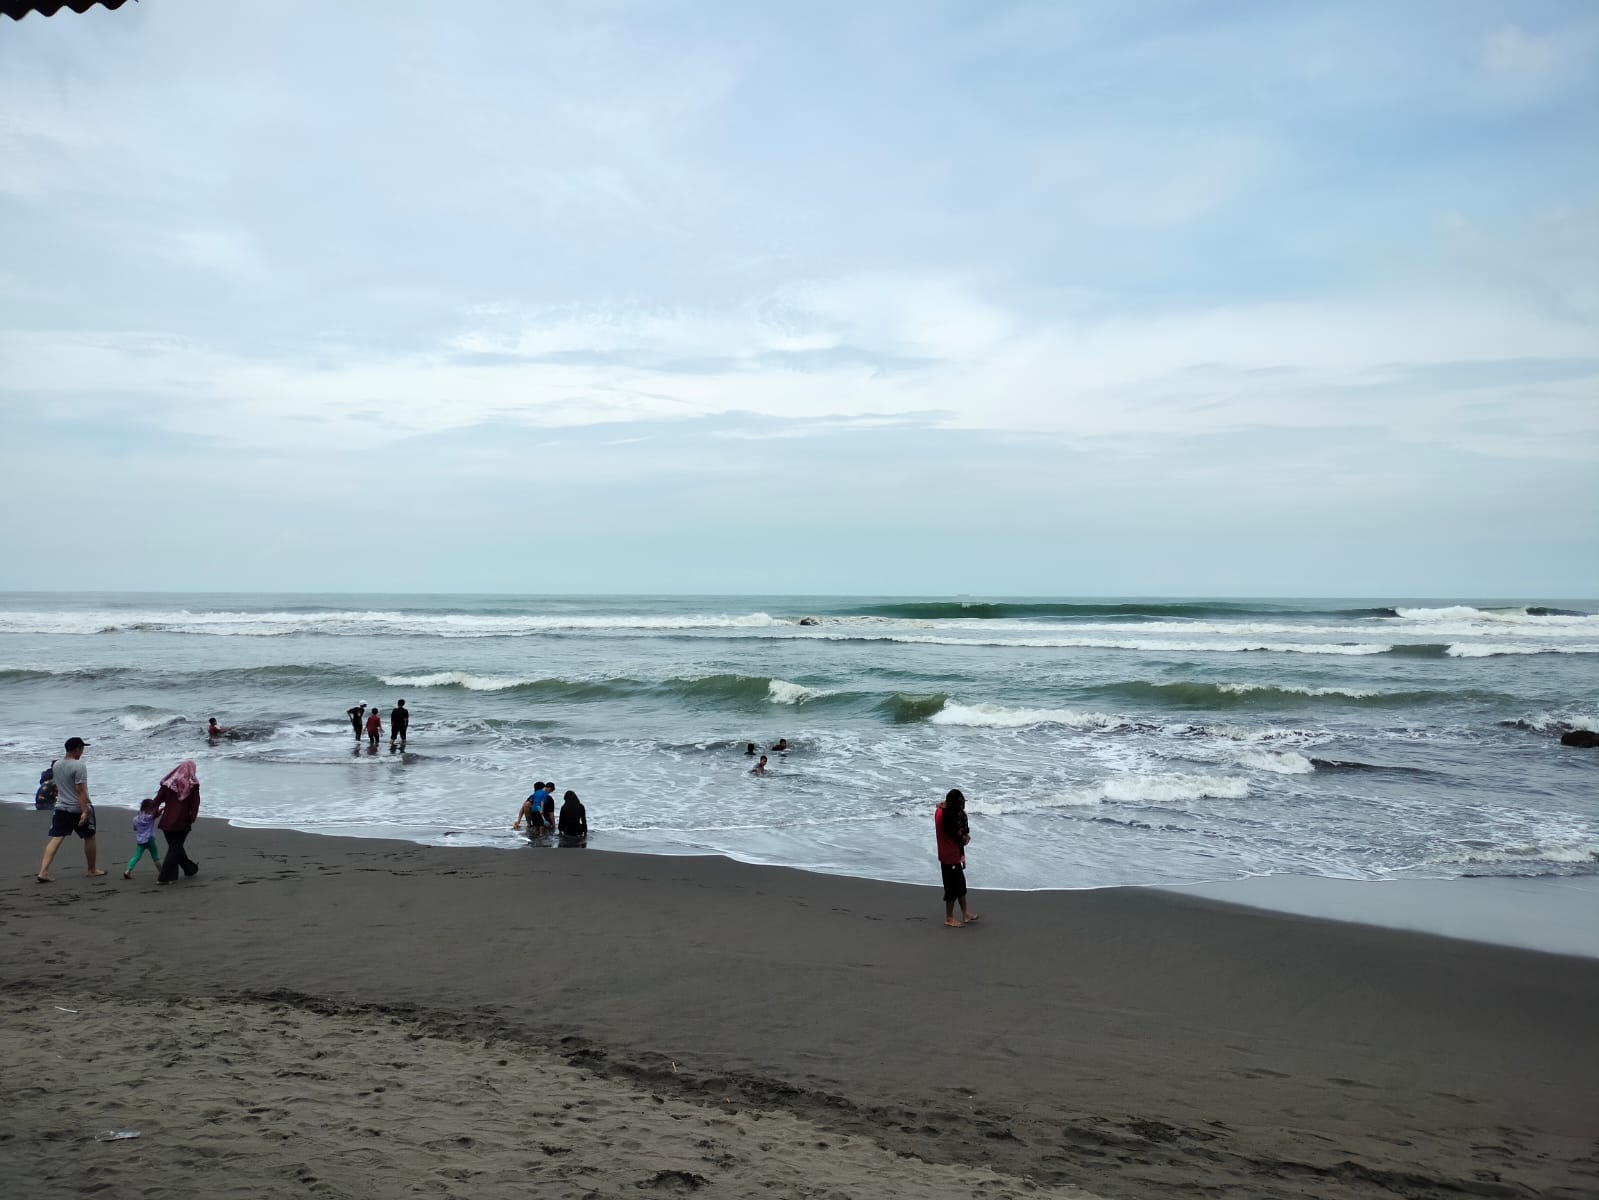 Nelayan Takut Melaut karena Angin Kencang, Aktivitas di Laut Sepi